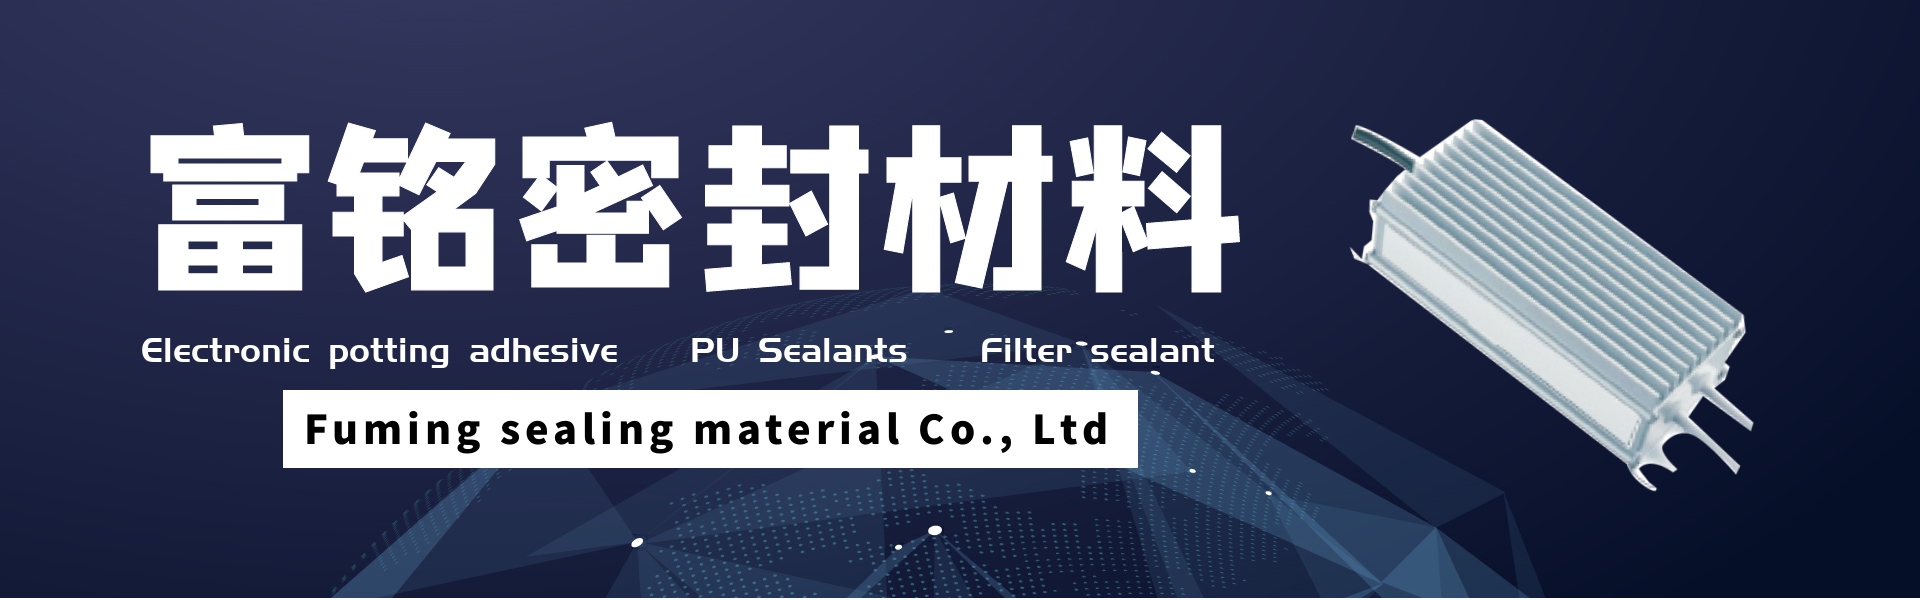 電子ポッティング接着剤、PUシーラント、フィルターシーラント,Dongguan fuming sealing material Co., Ltd